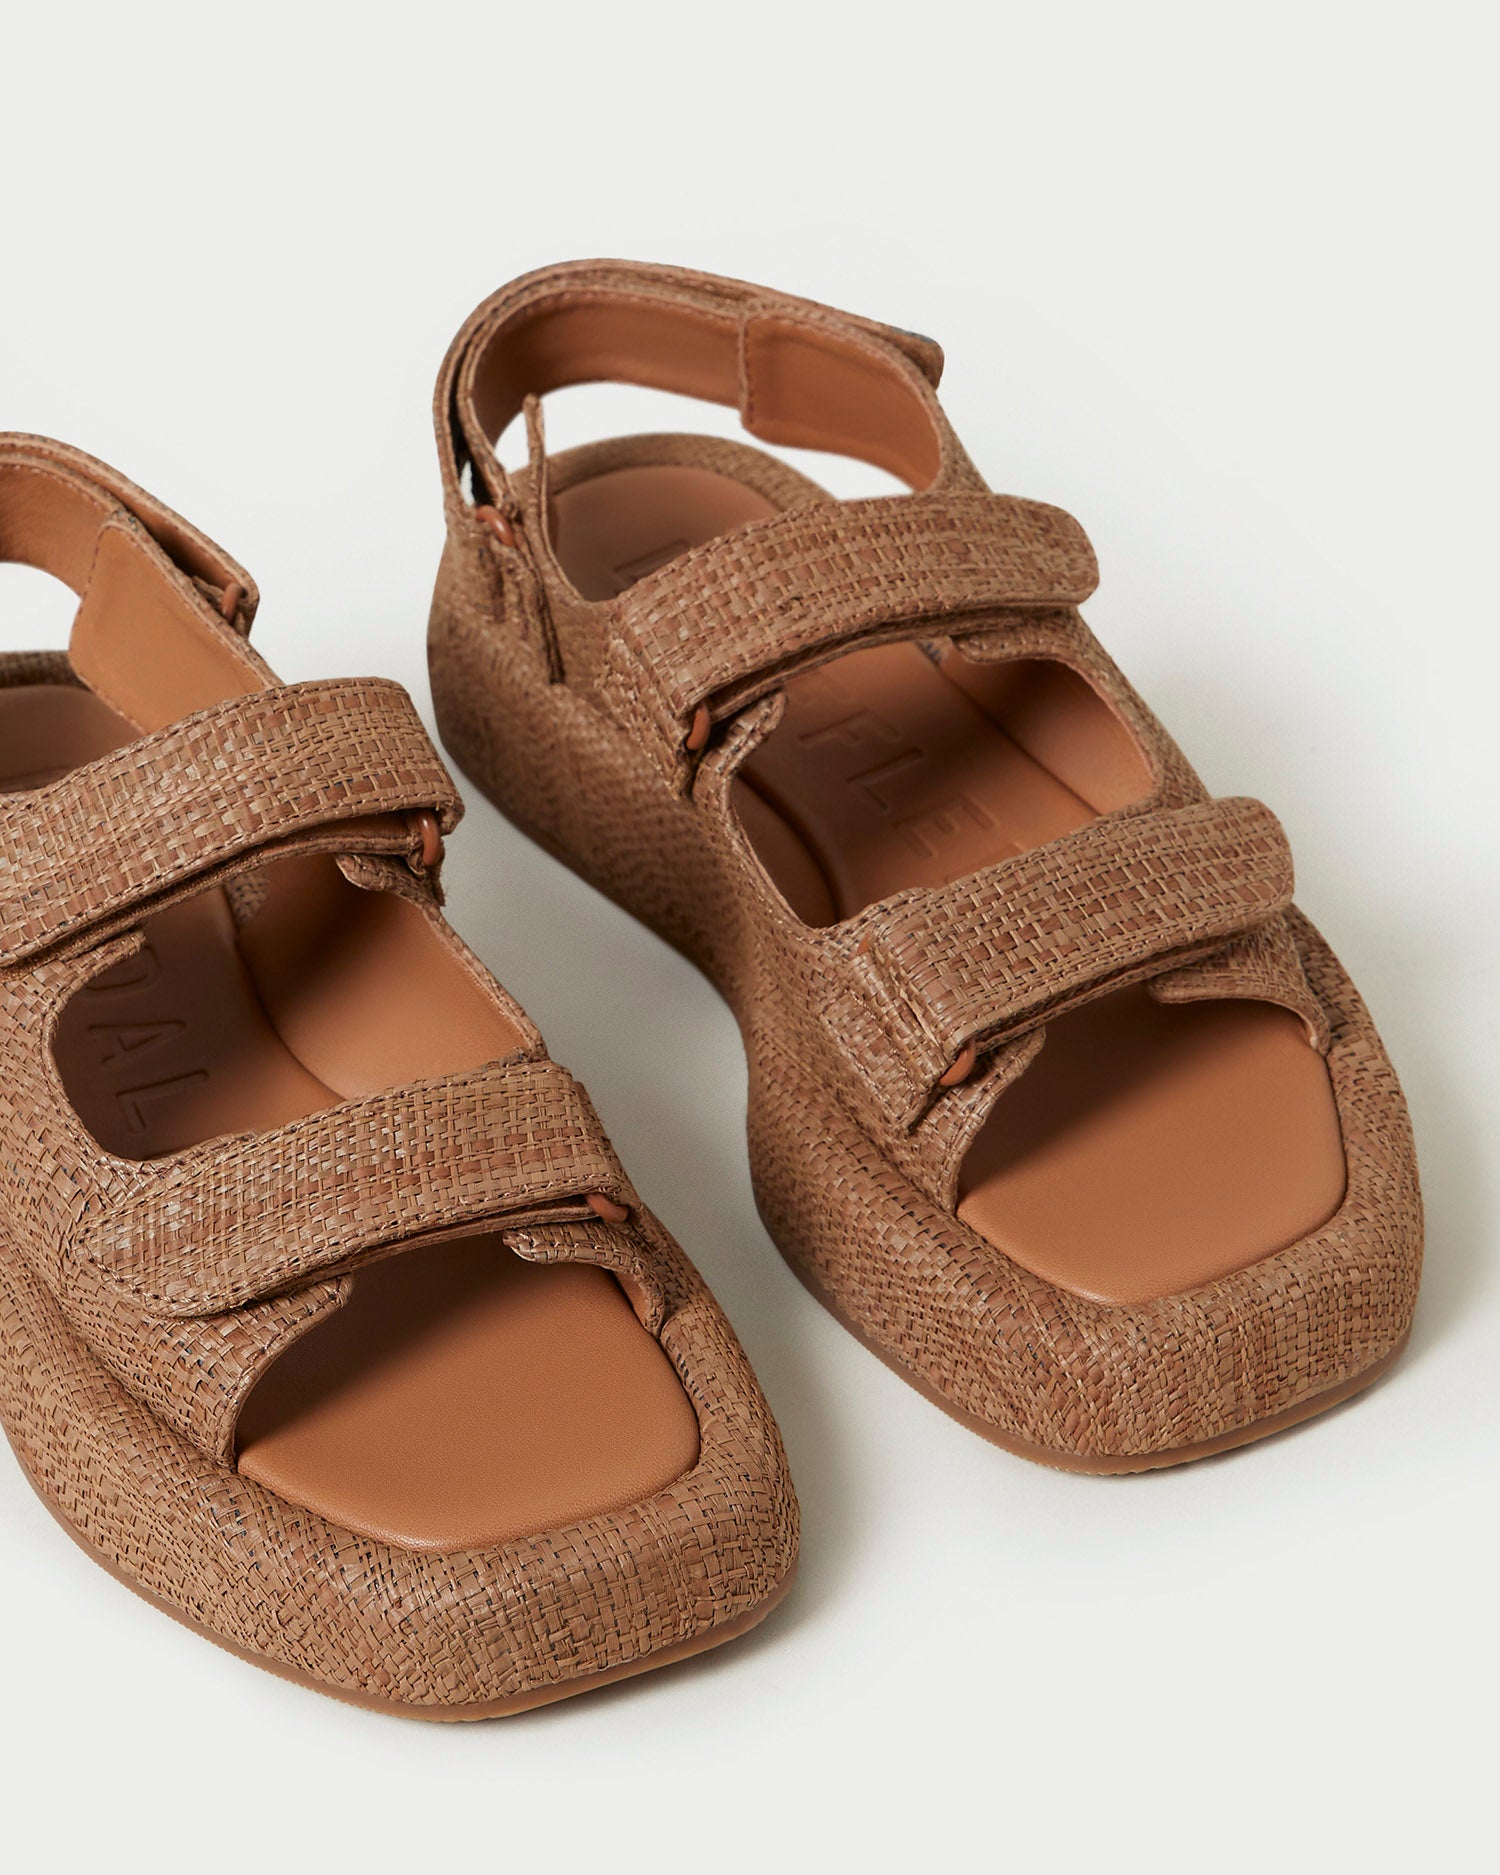 Loeffler Randall Women's Blaise Brown Raffia Platform Sandal - Flat Sandals - 9.5